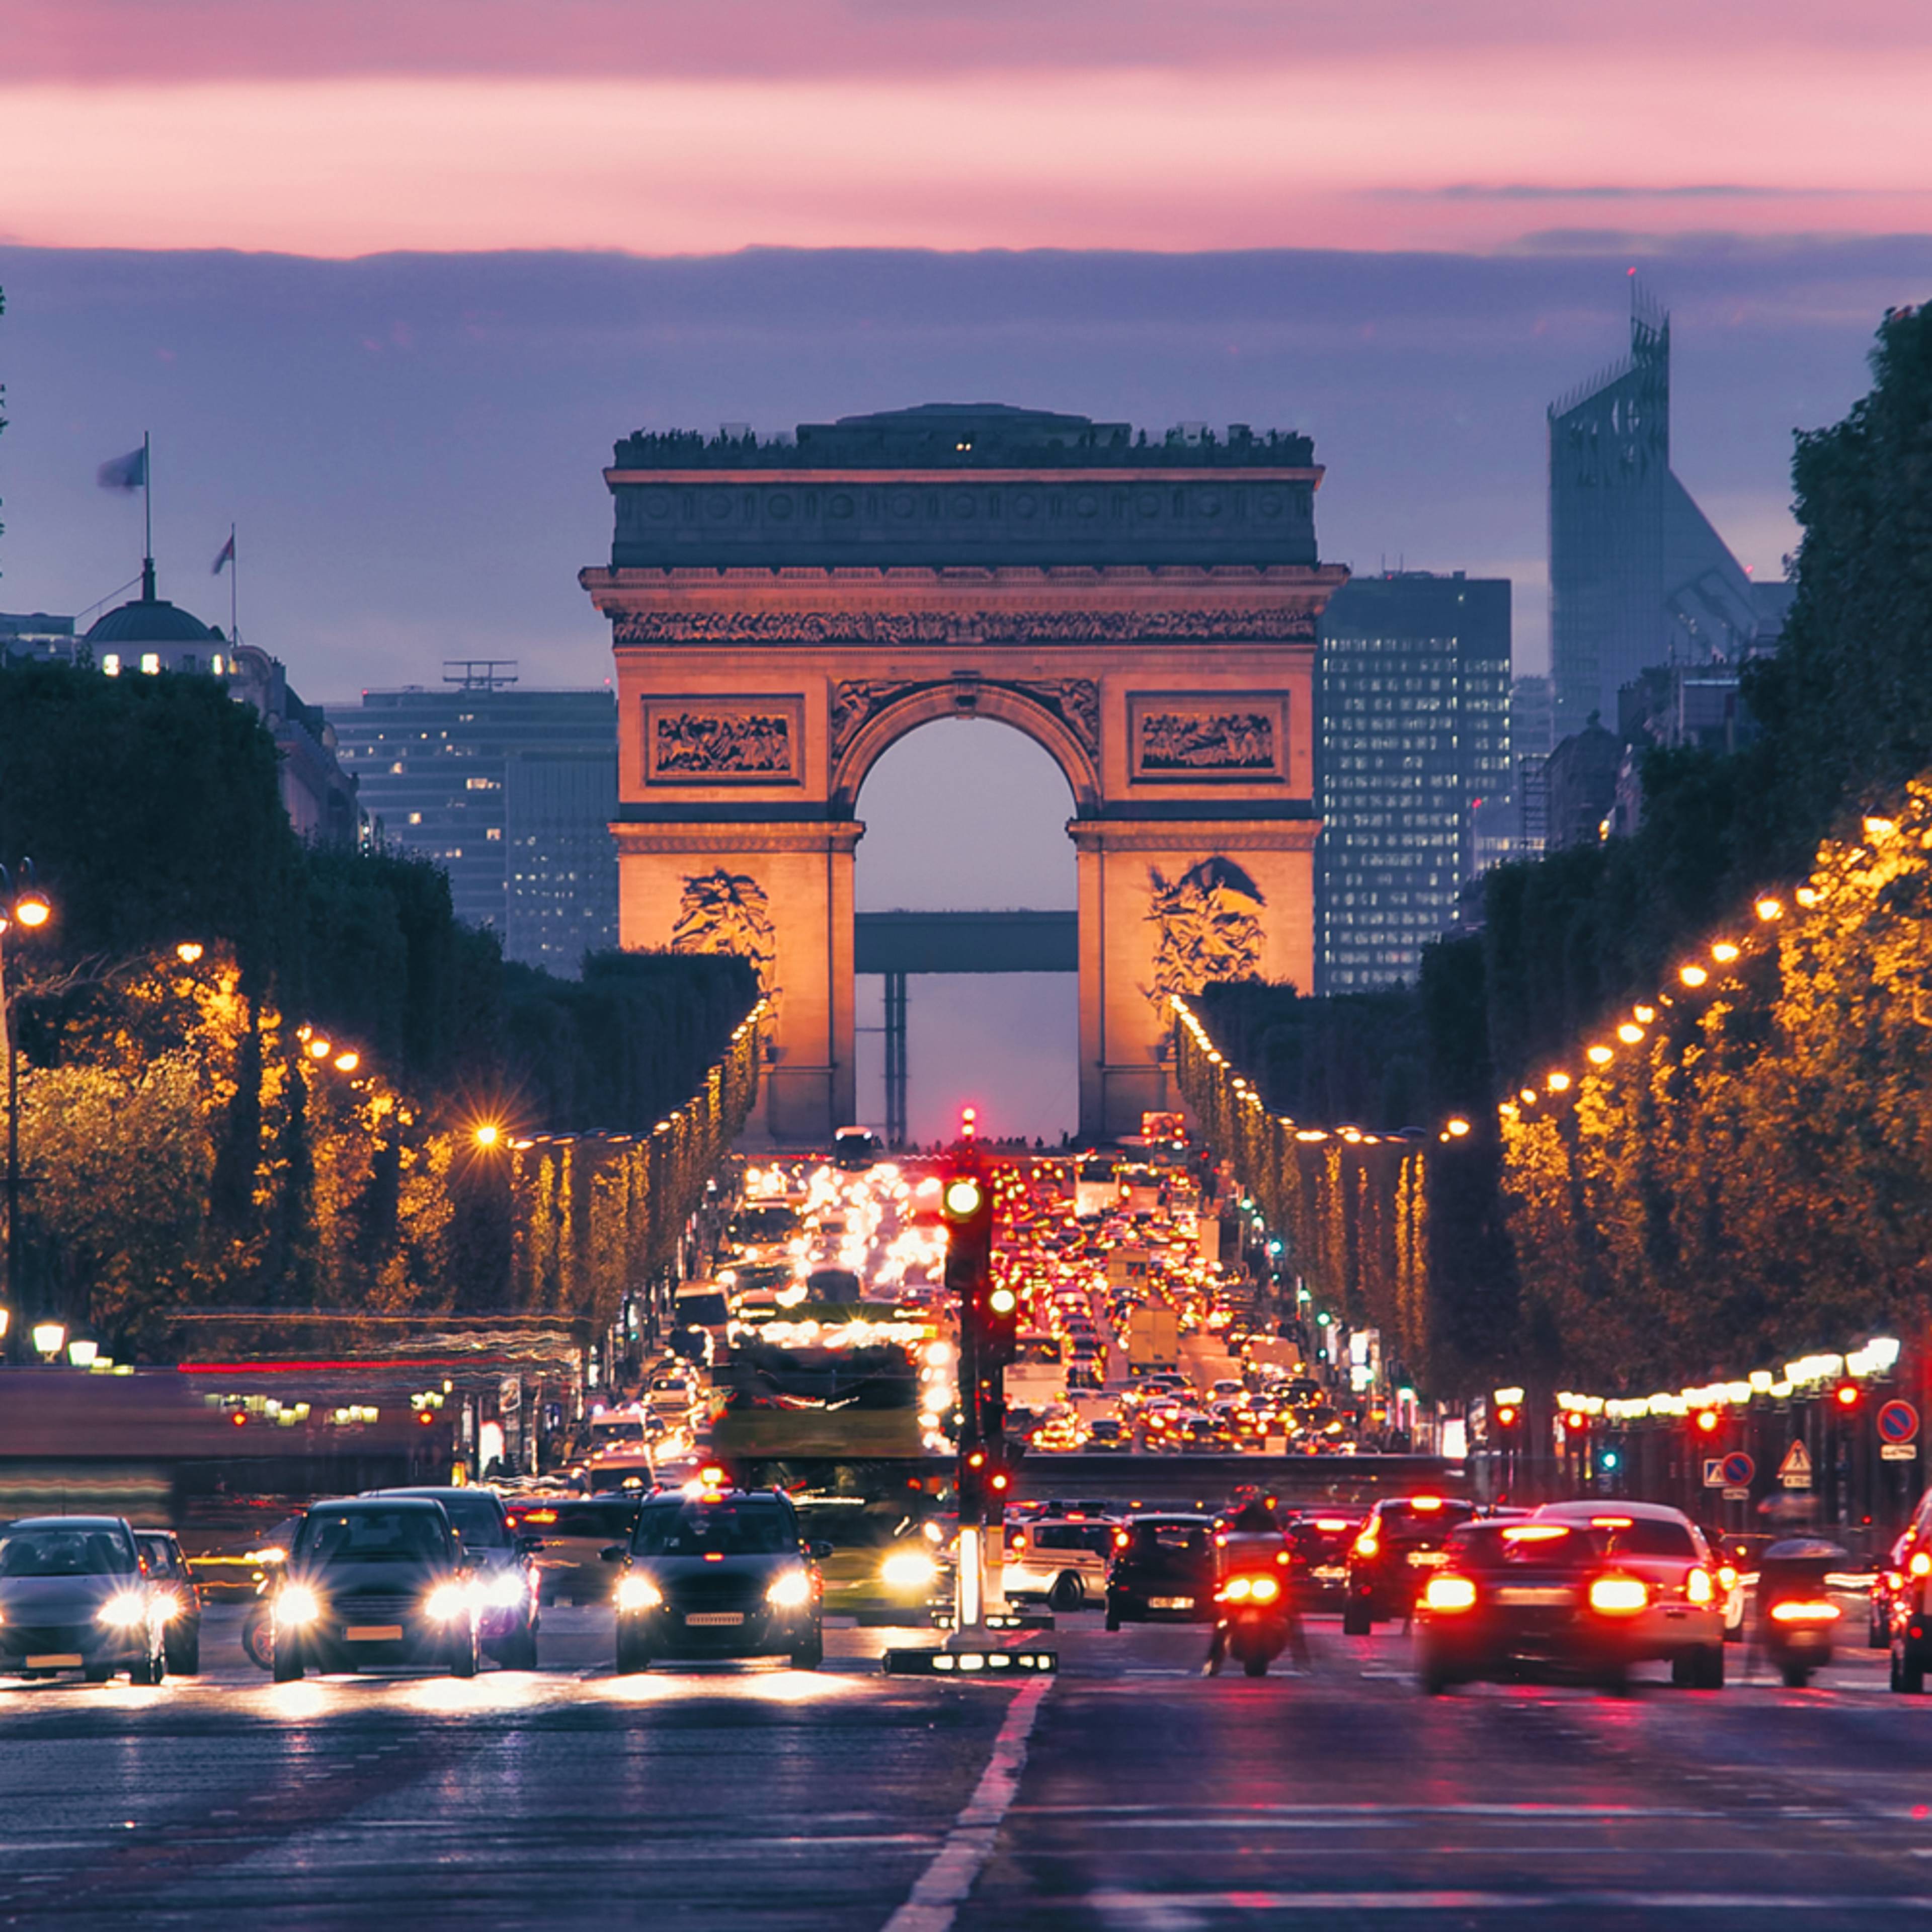 Städtereise Frankreich - Reise jetzt individuell gestalten